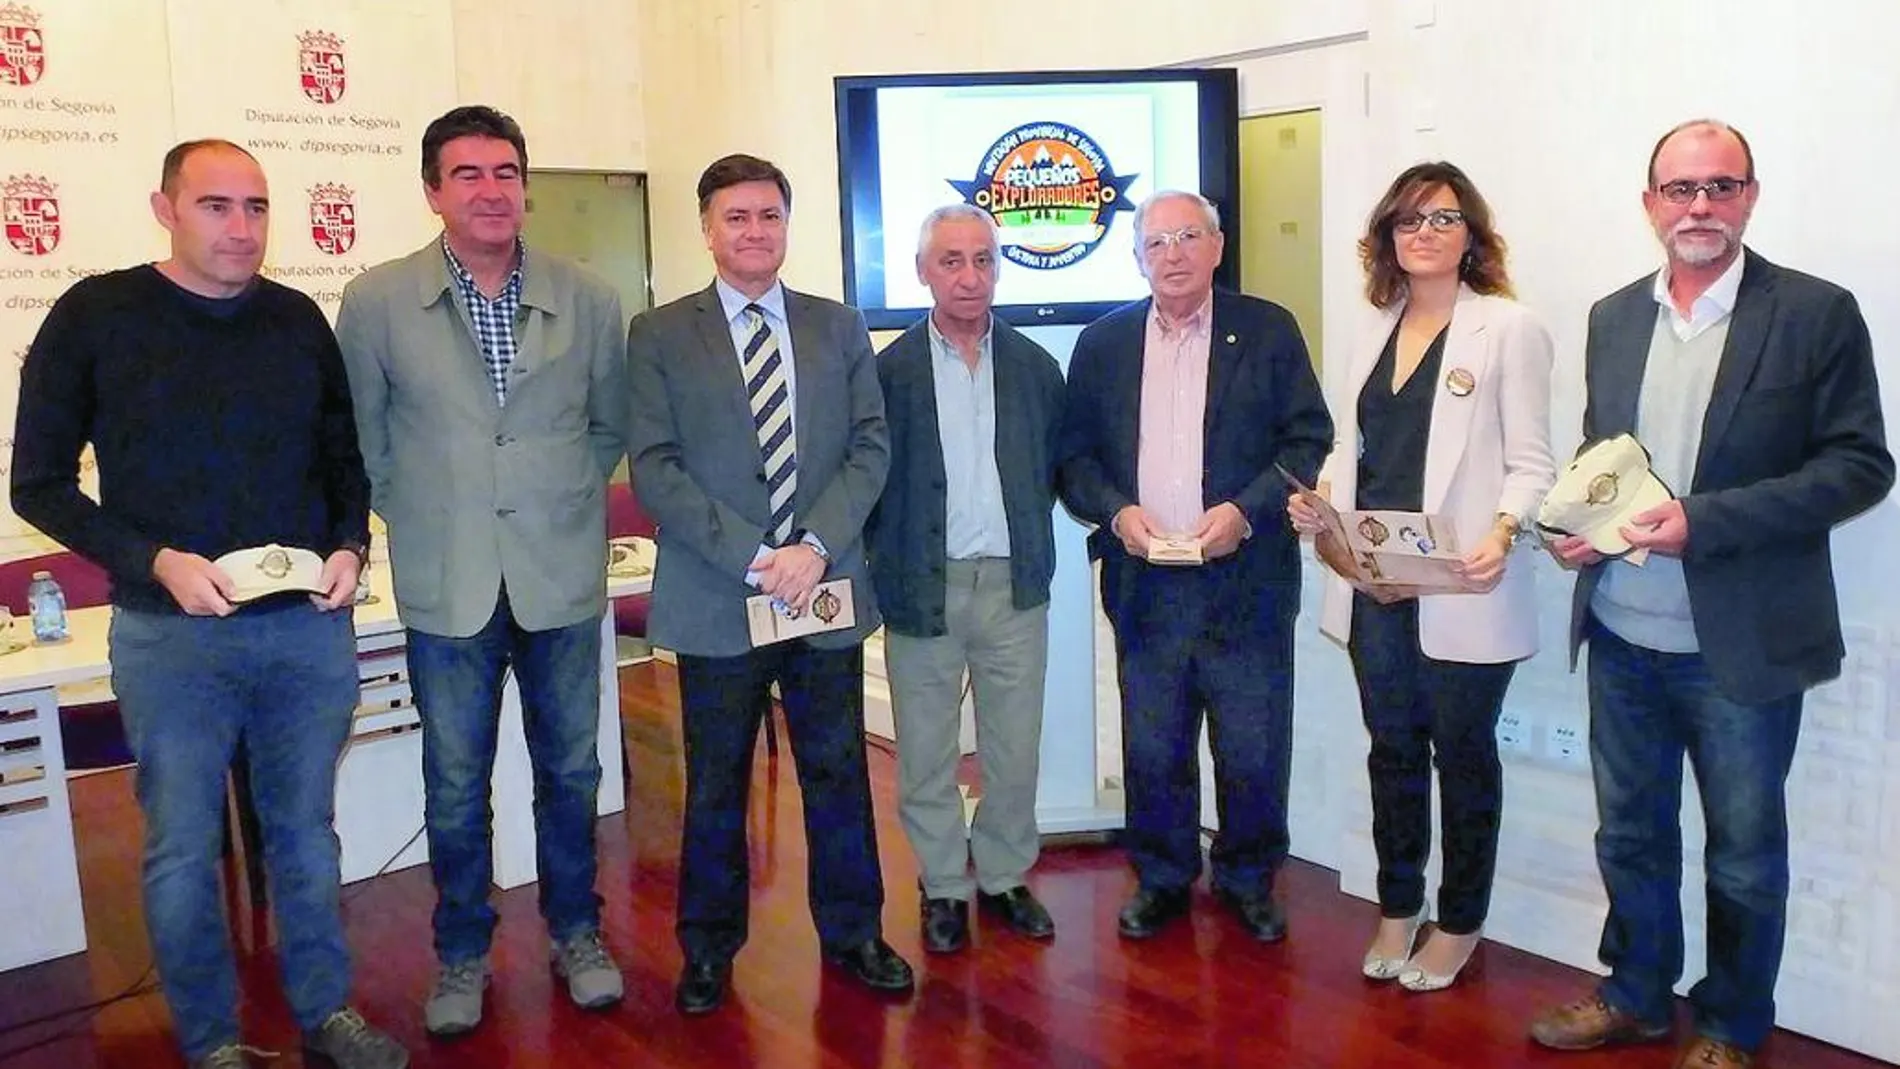 El presidente de la Diputación de Segovia, Francisco Vázquez, presenta la inciativa junto a los alcaldes de los pueblos.